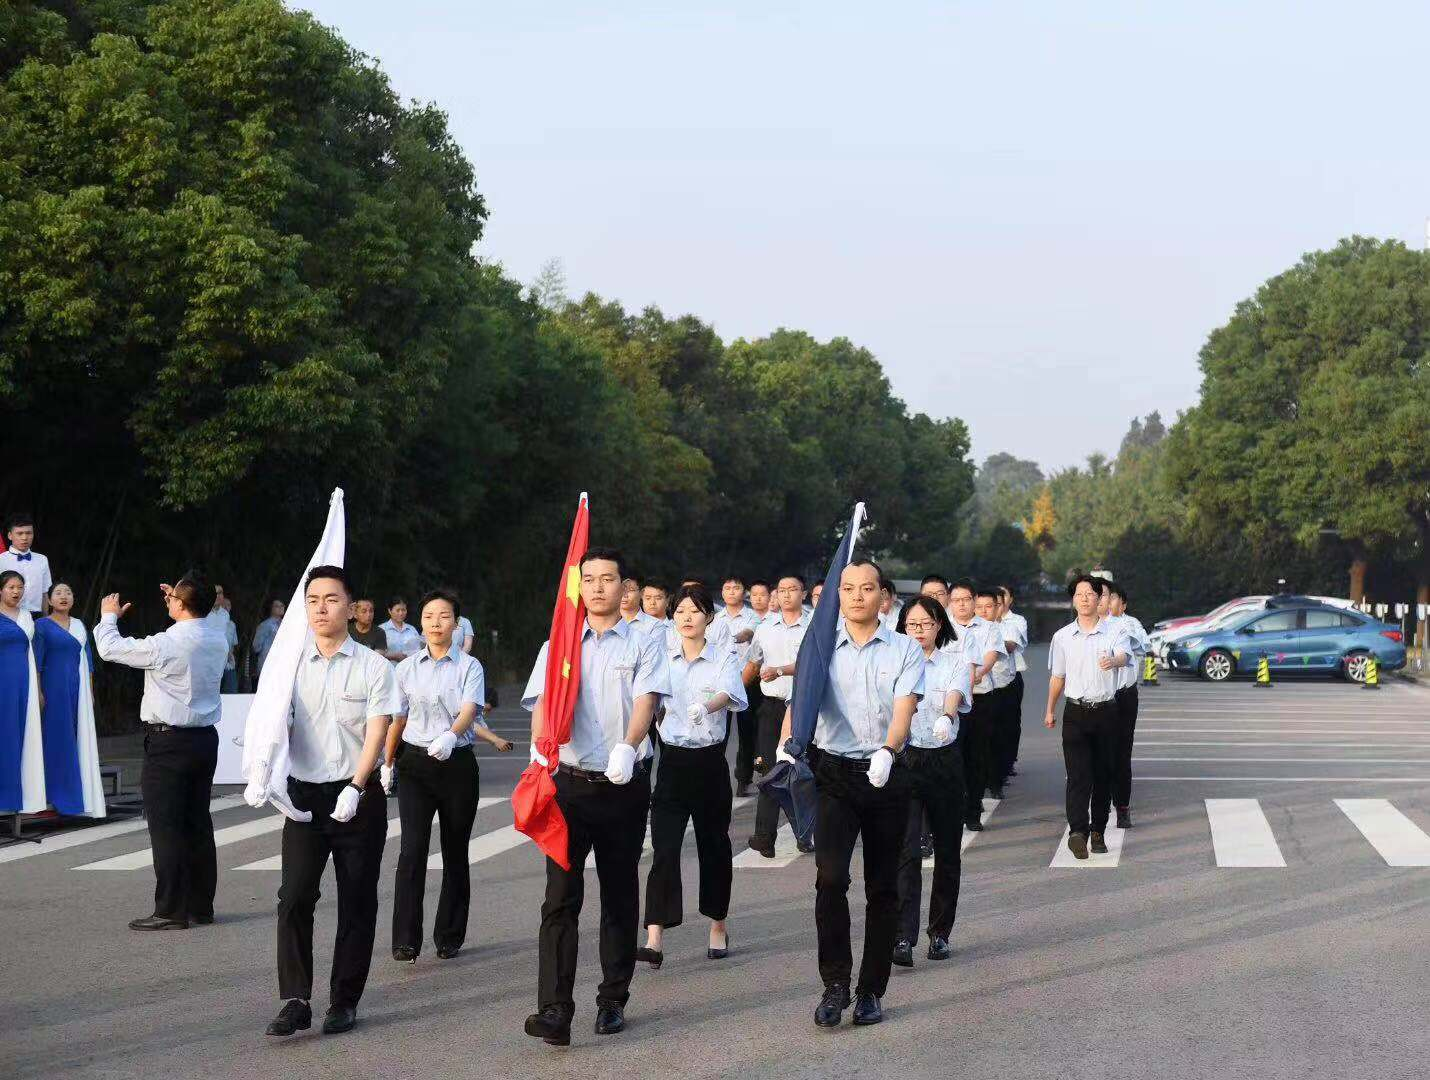 Shandong Datu održao je ceremoniju podizanja zastave povodom proslave 73. godišnjice osnivanja Nove Kine